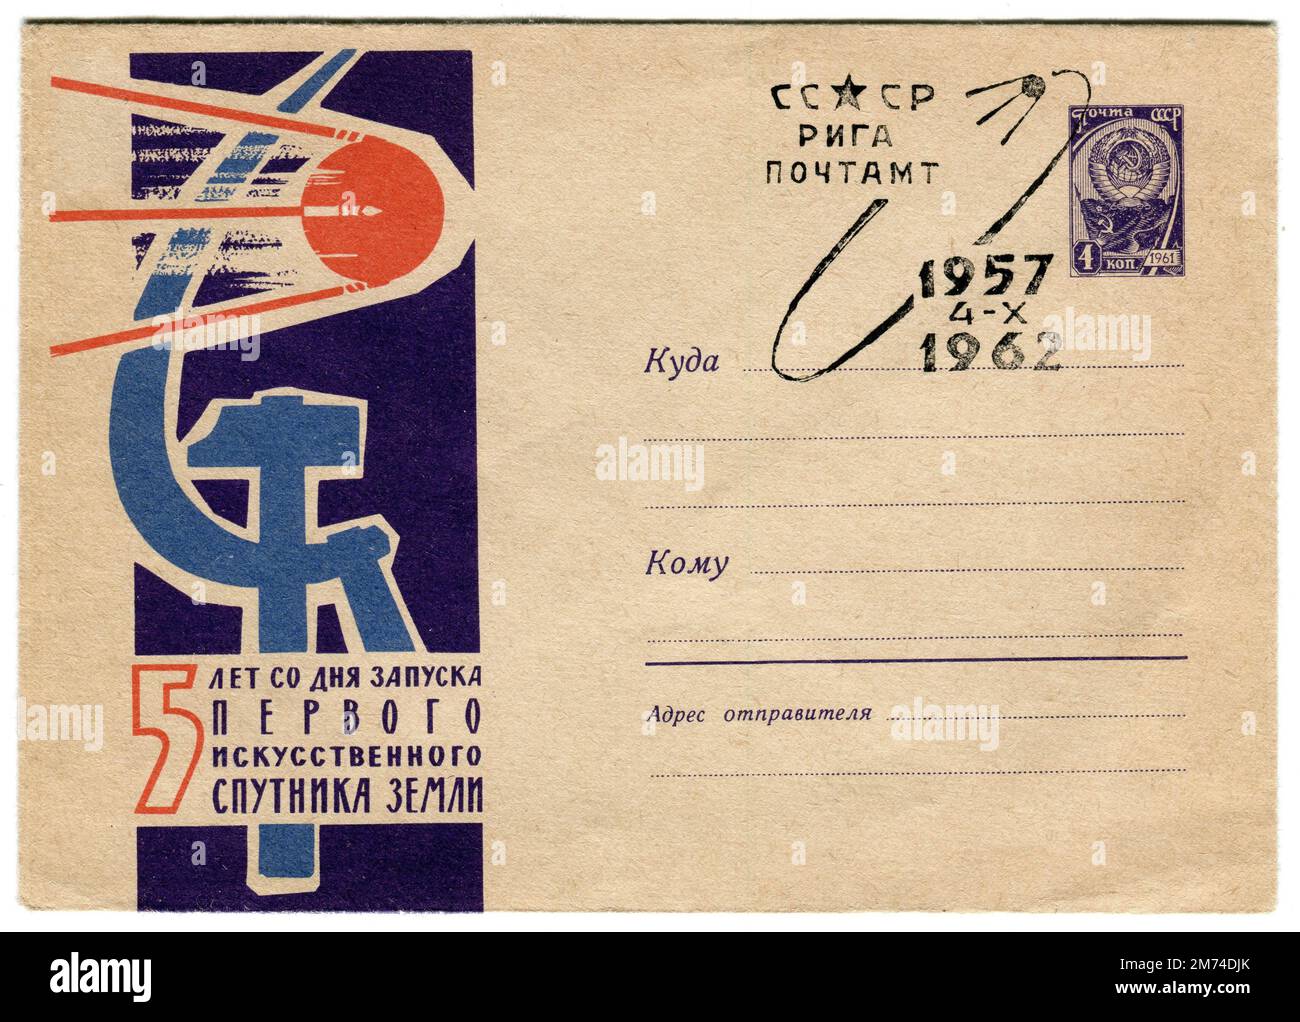 Eine alte russische Weltraumhülle, die am 4. Oktober 1962 veröffentlicht wurde, um dem 5. Jahrestag des Starts des „Sputnik“-Satelliten zu gedenken. Sputnik 1 war der erste künstliche Erdsatellit, der von der Sowjetunion am 4. Oktober 1957 als Teil des sowjetischen Raumfahrtprogramms in eine elliptische niedrige Erdumlaufbahn gestartet wurde. Er schickte ein Funksignal für drei Wochen zurück zur Erde, bis der Luftwiderstand am 4. Januar 1958 dazu führte, dass er wieder in die Atmosphäre fiel. Stockfoto